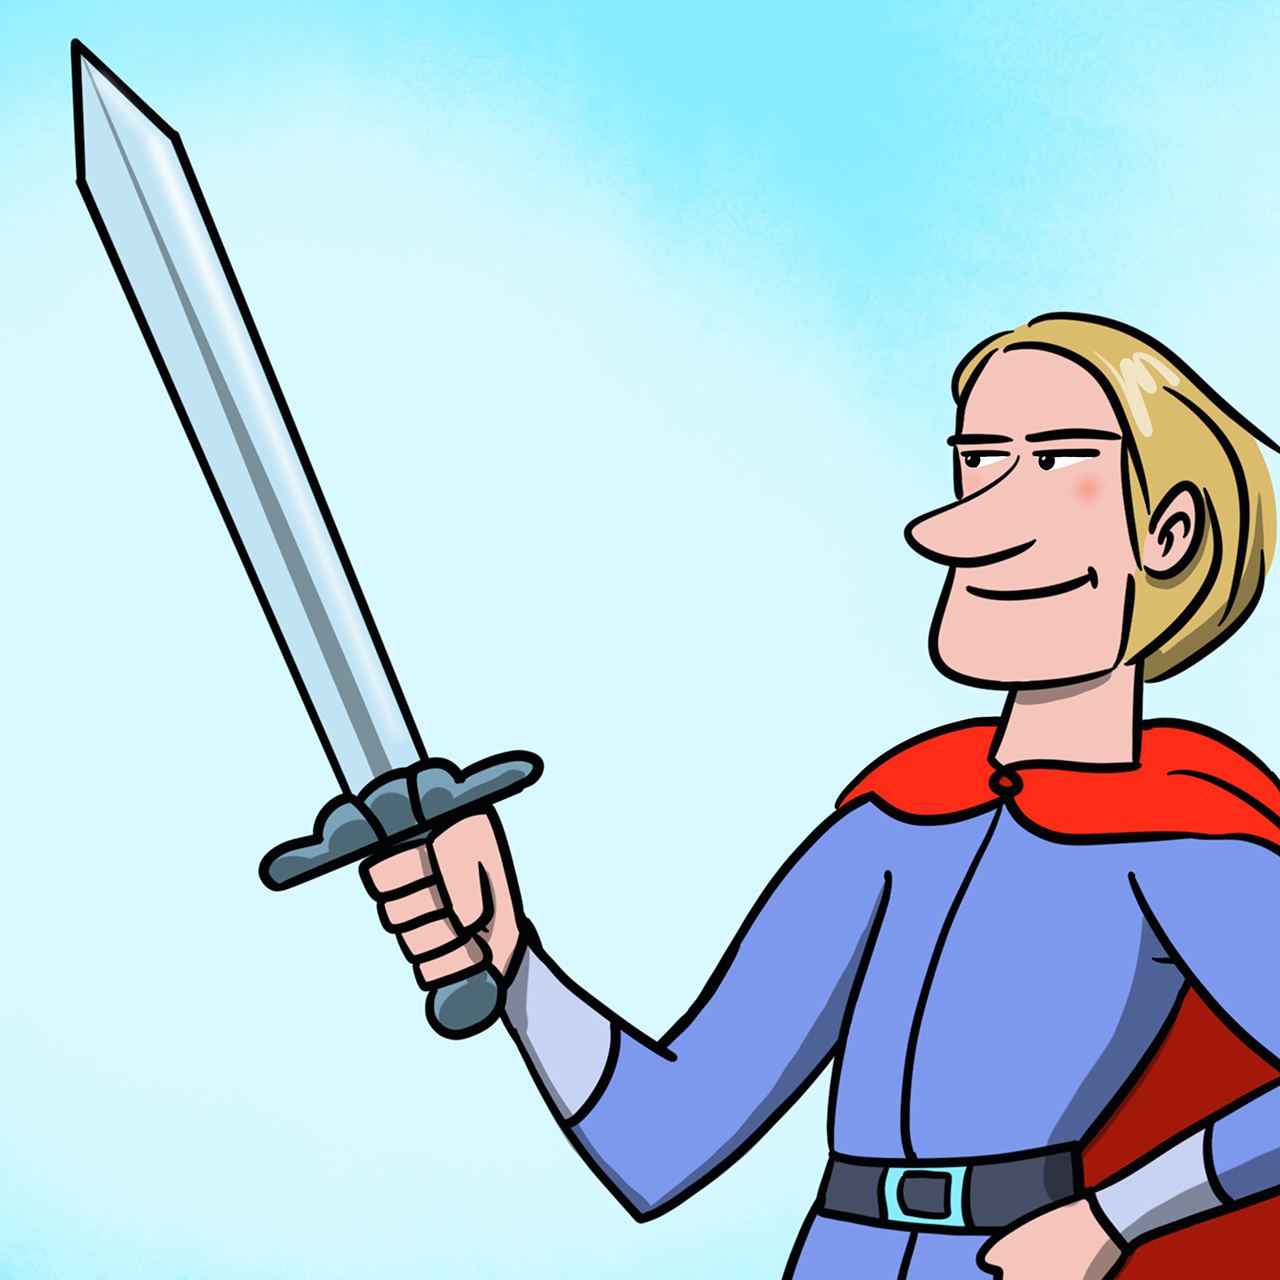 Muškarac u plavoj odori i s crvenim plaštom zamišljeno gleda u svoj mač kojeg drži desnom rukom.